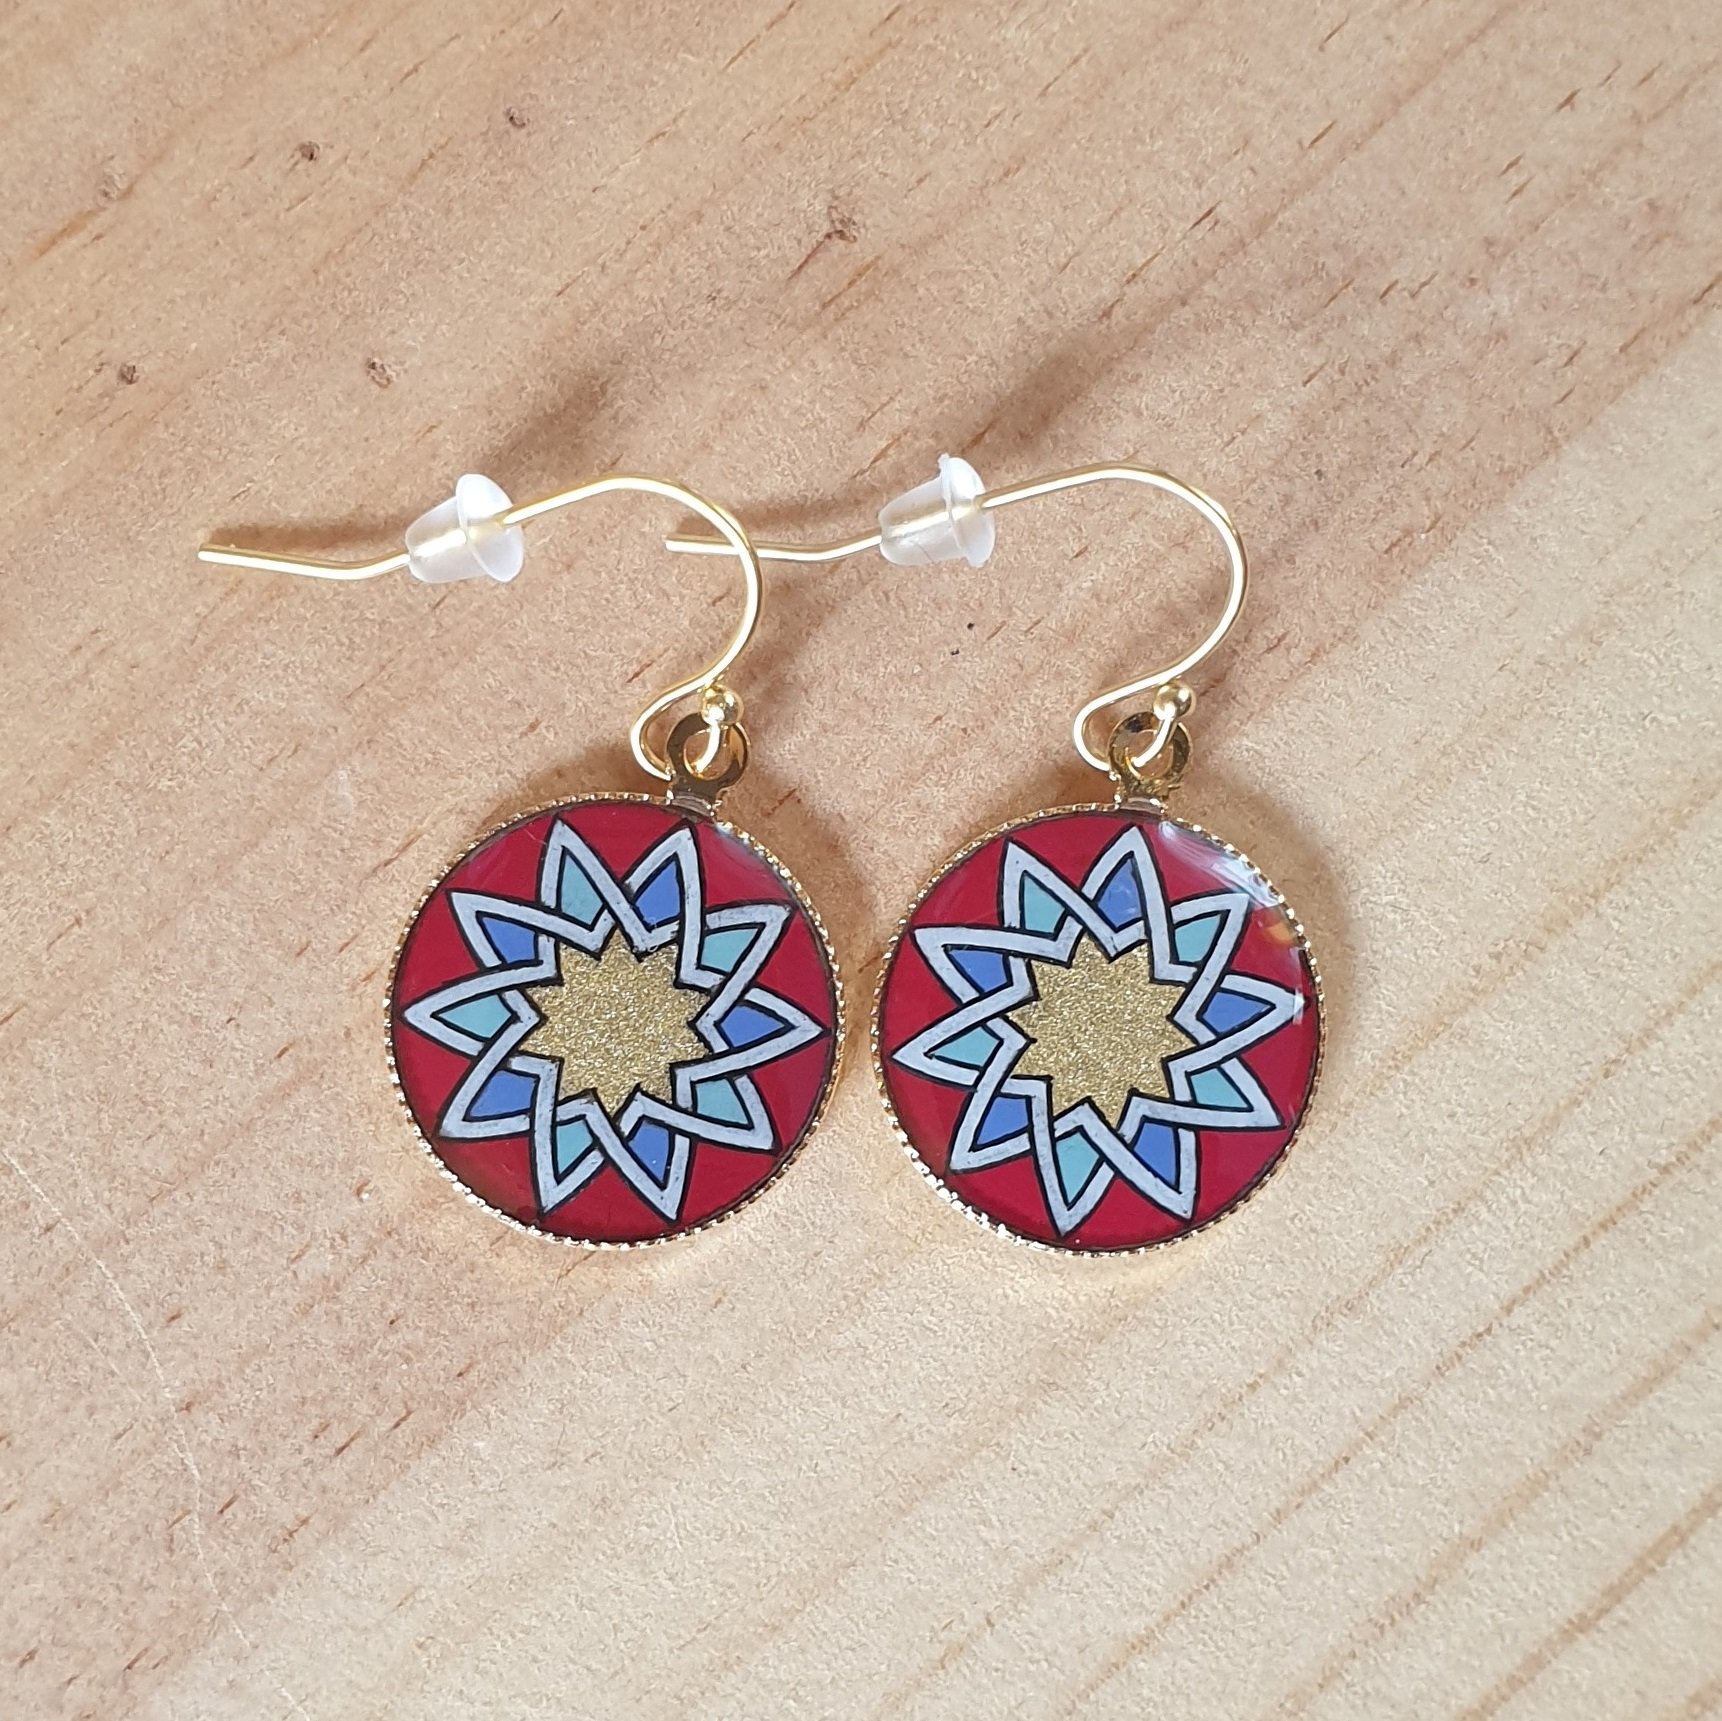 Gold/red/blue/green rosette earrings